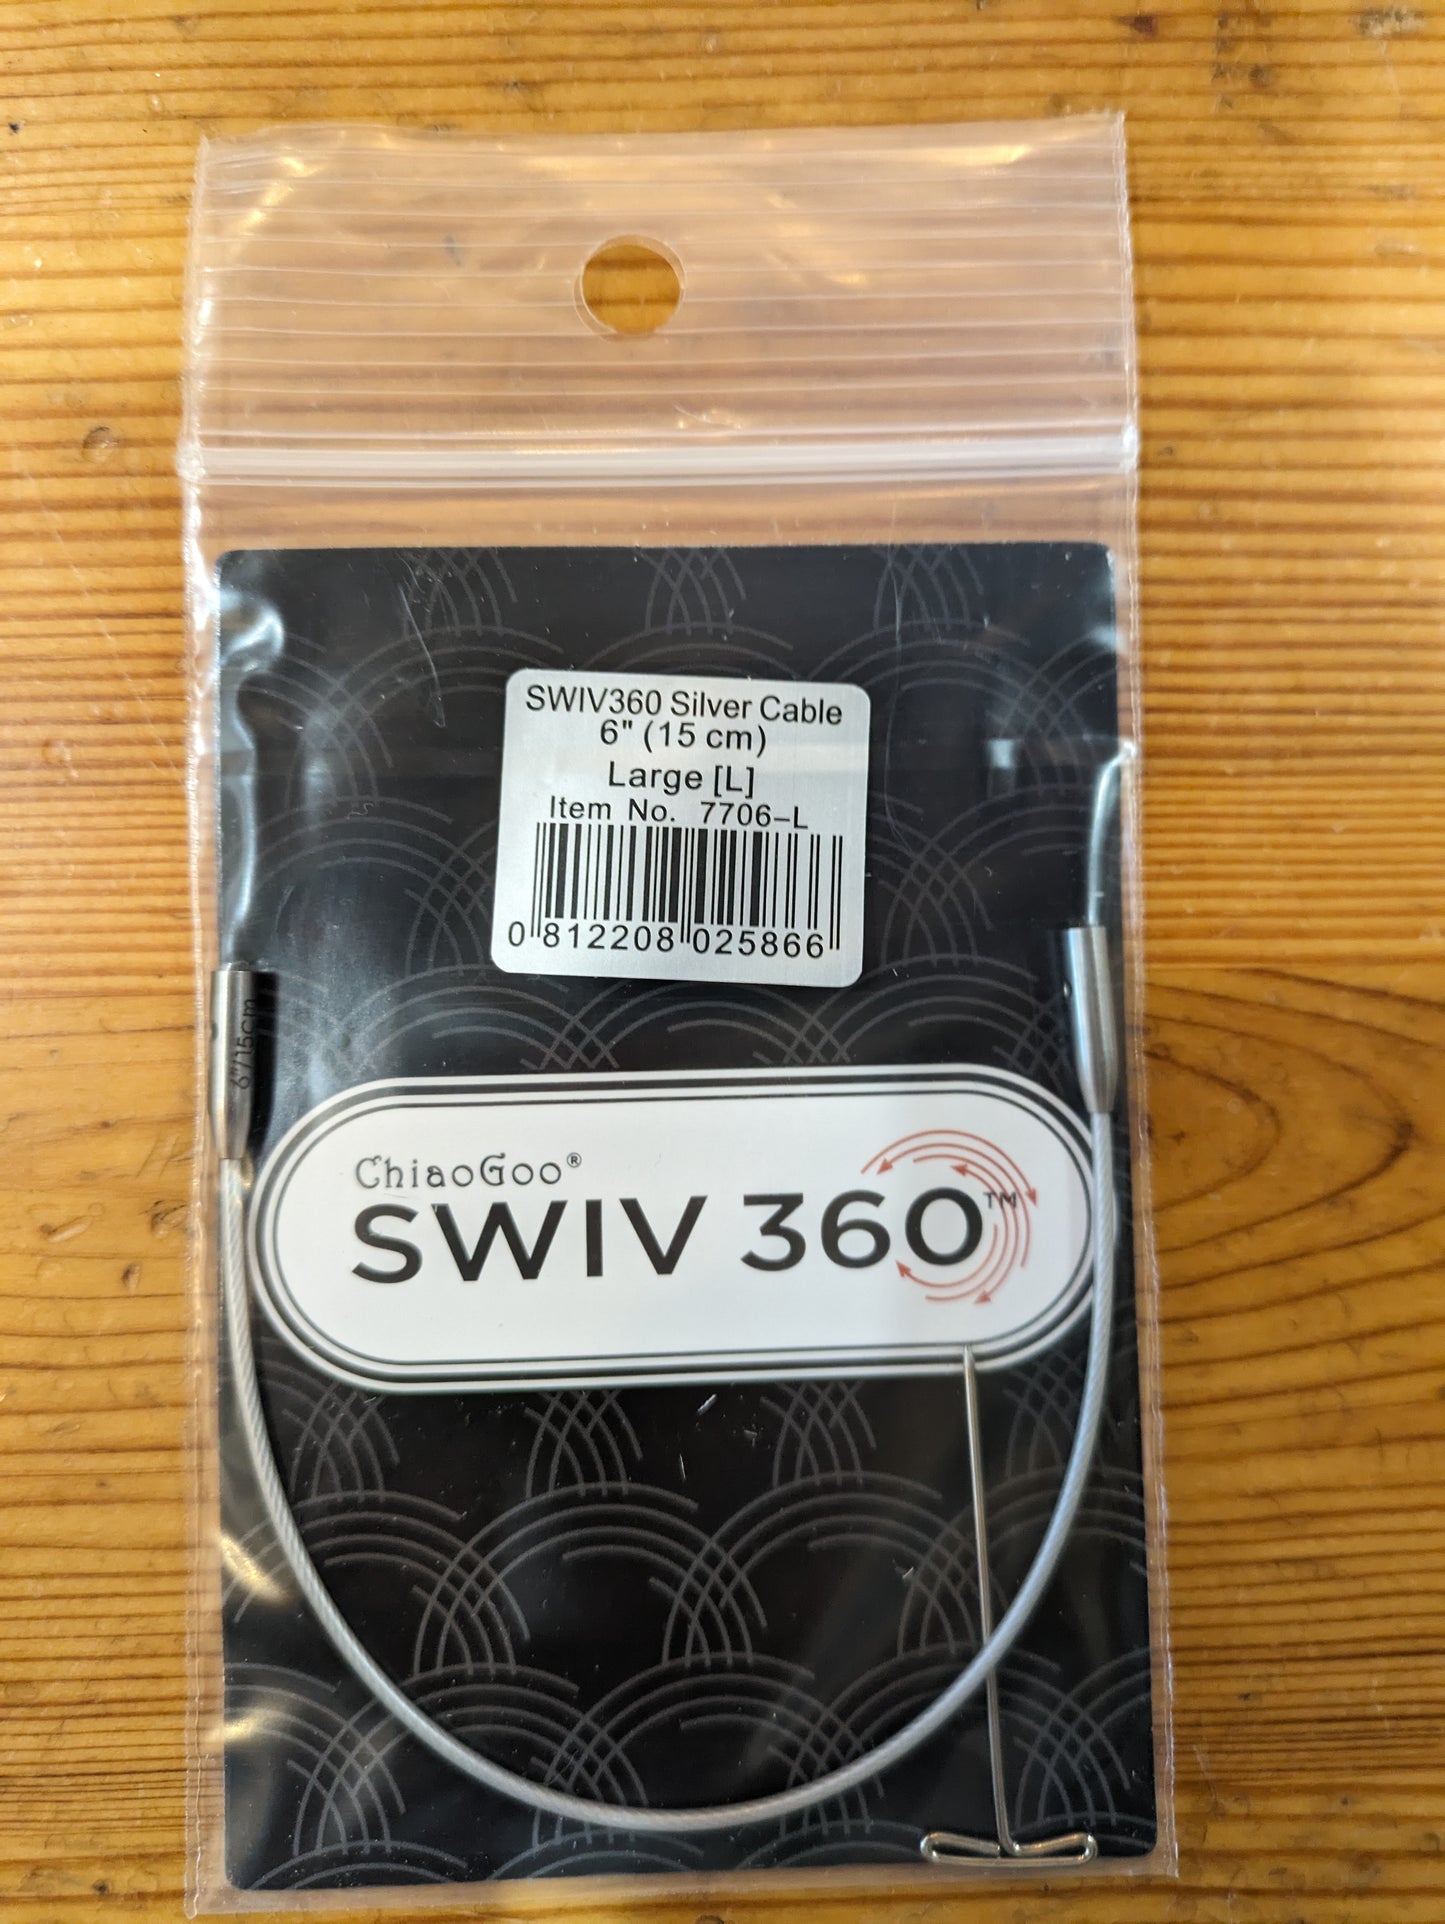 ChiaoGoo Swiv 360 Silver Cable